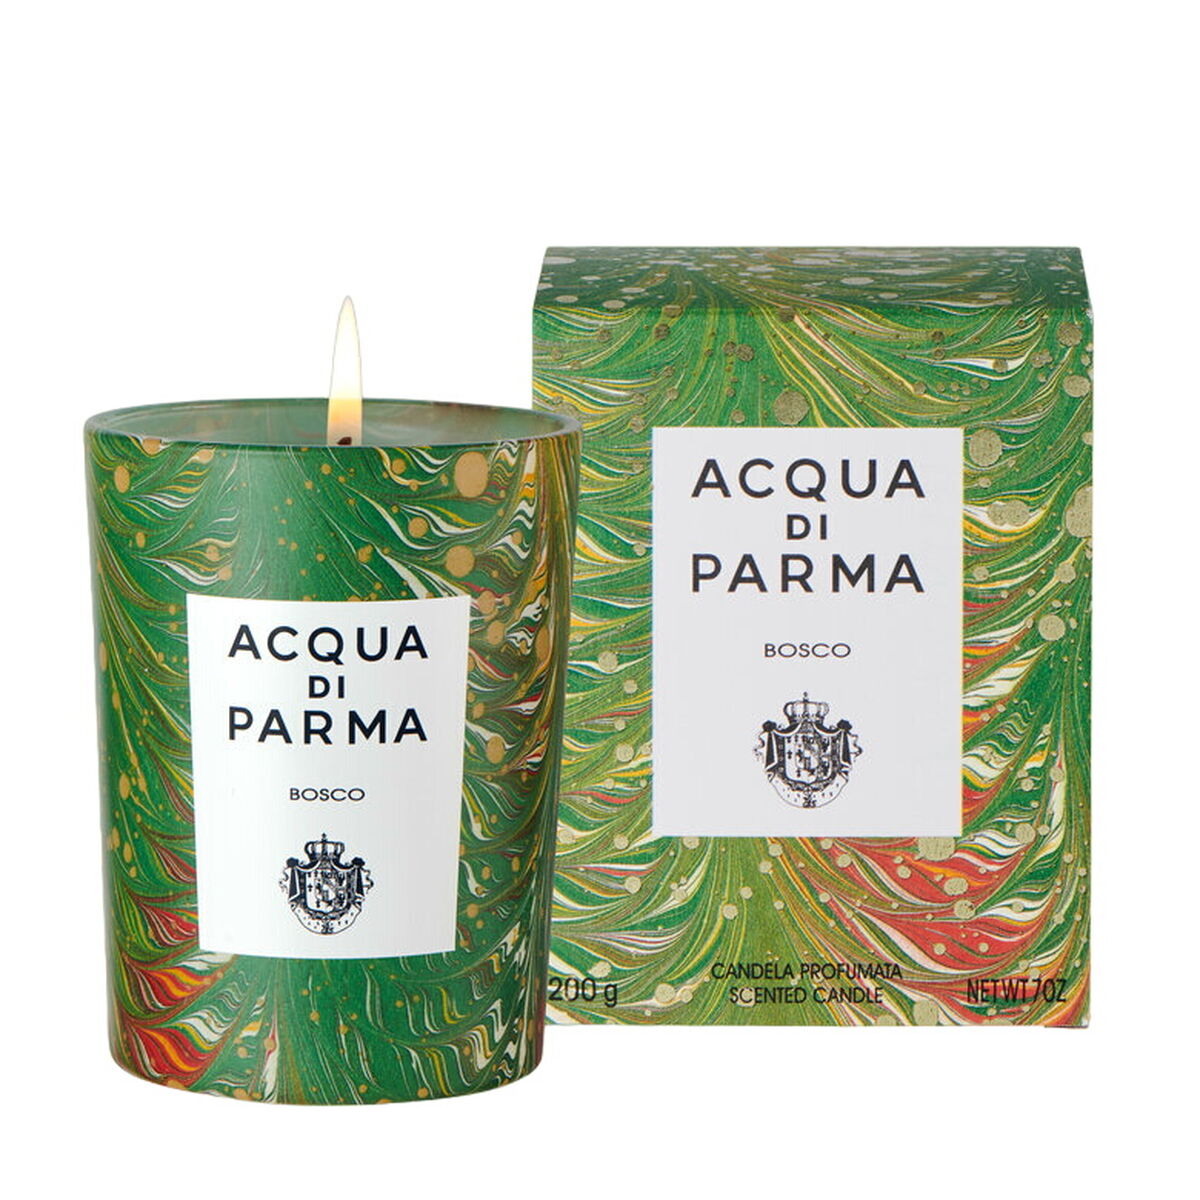 Scented Candle Acqua Di Parma 200 g Bosco